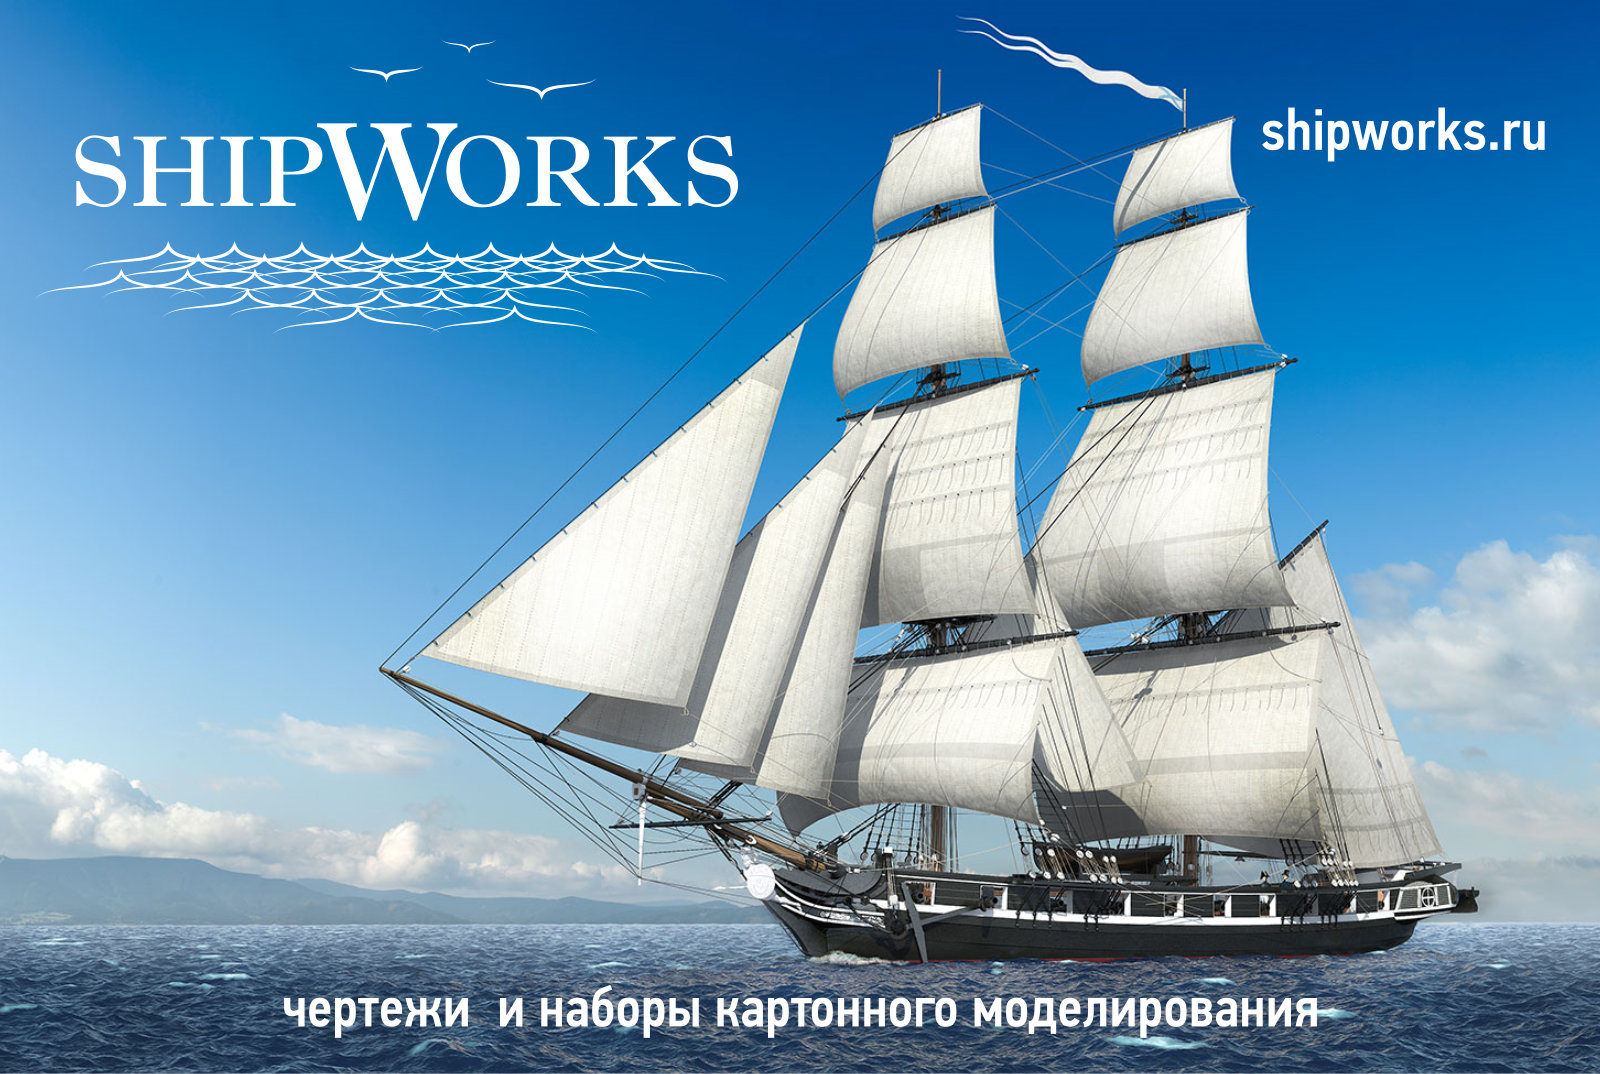 SHIPWORKS_banner02.jpg